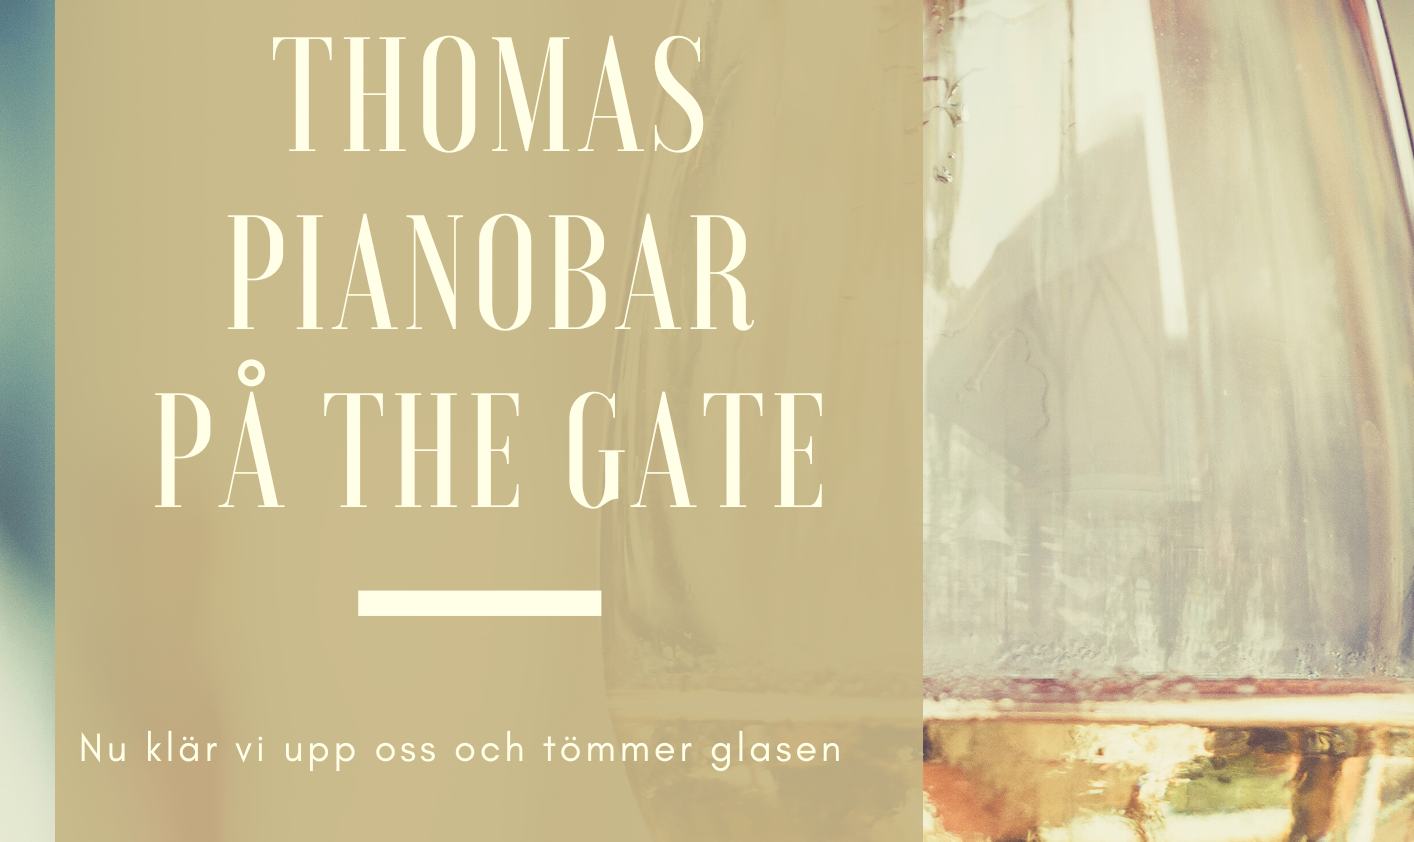 Bildbeskrivning saknas för evenemanget: Thomas Pianobar på THE GATE